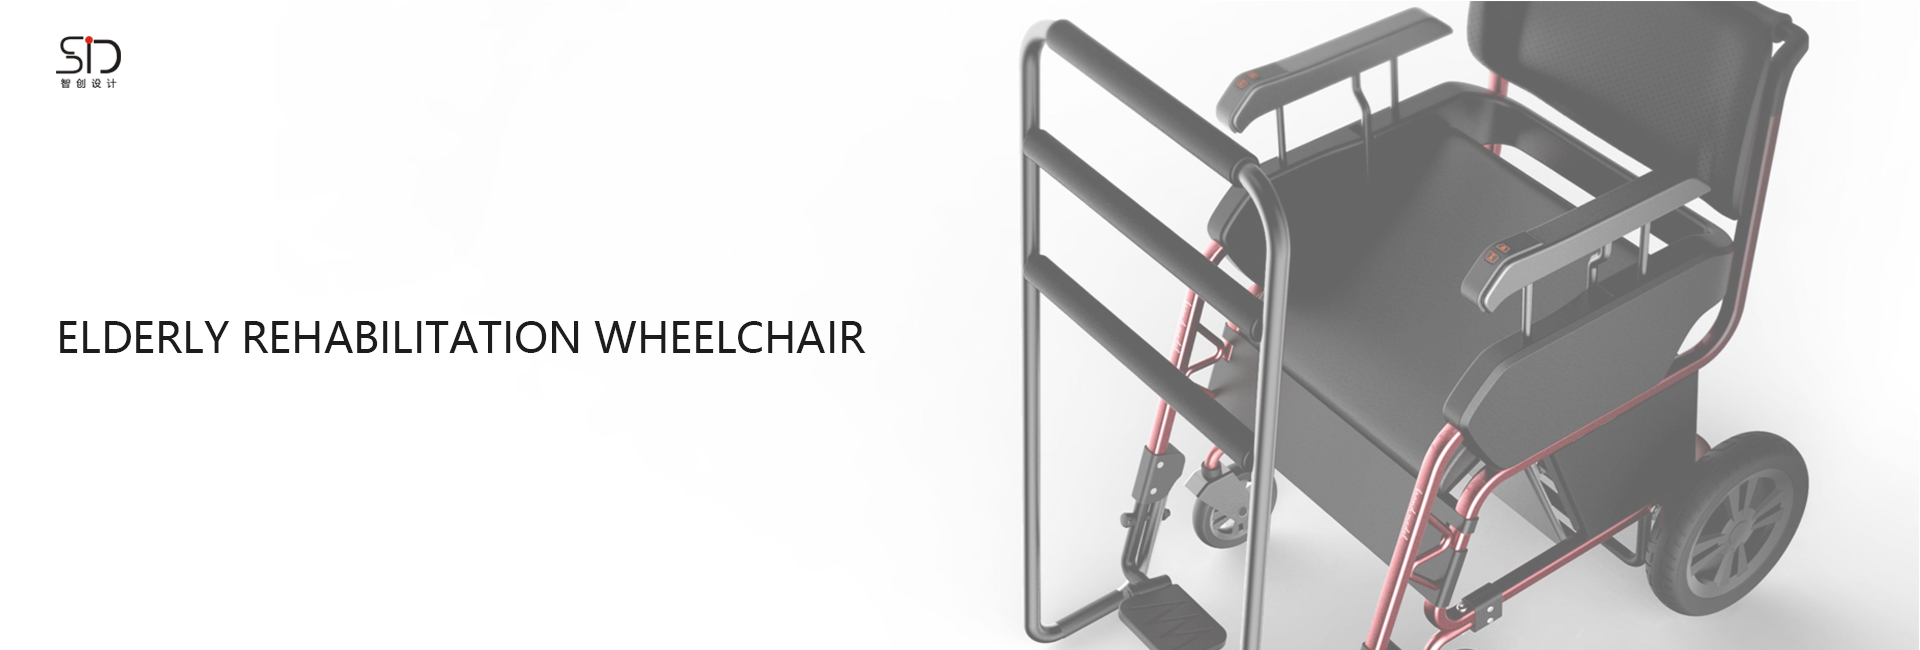 海象康复轮椅外观设计